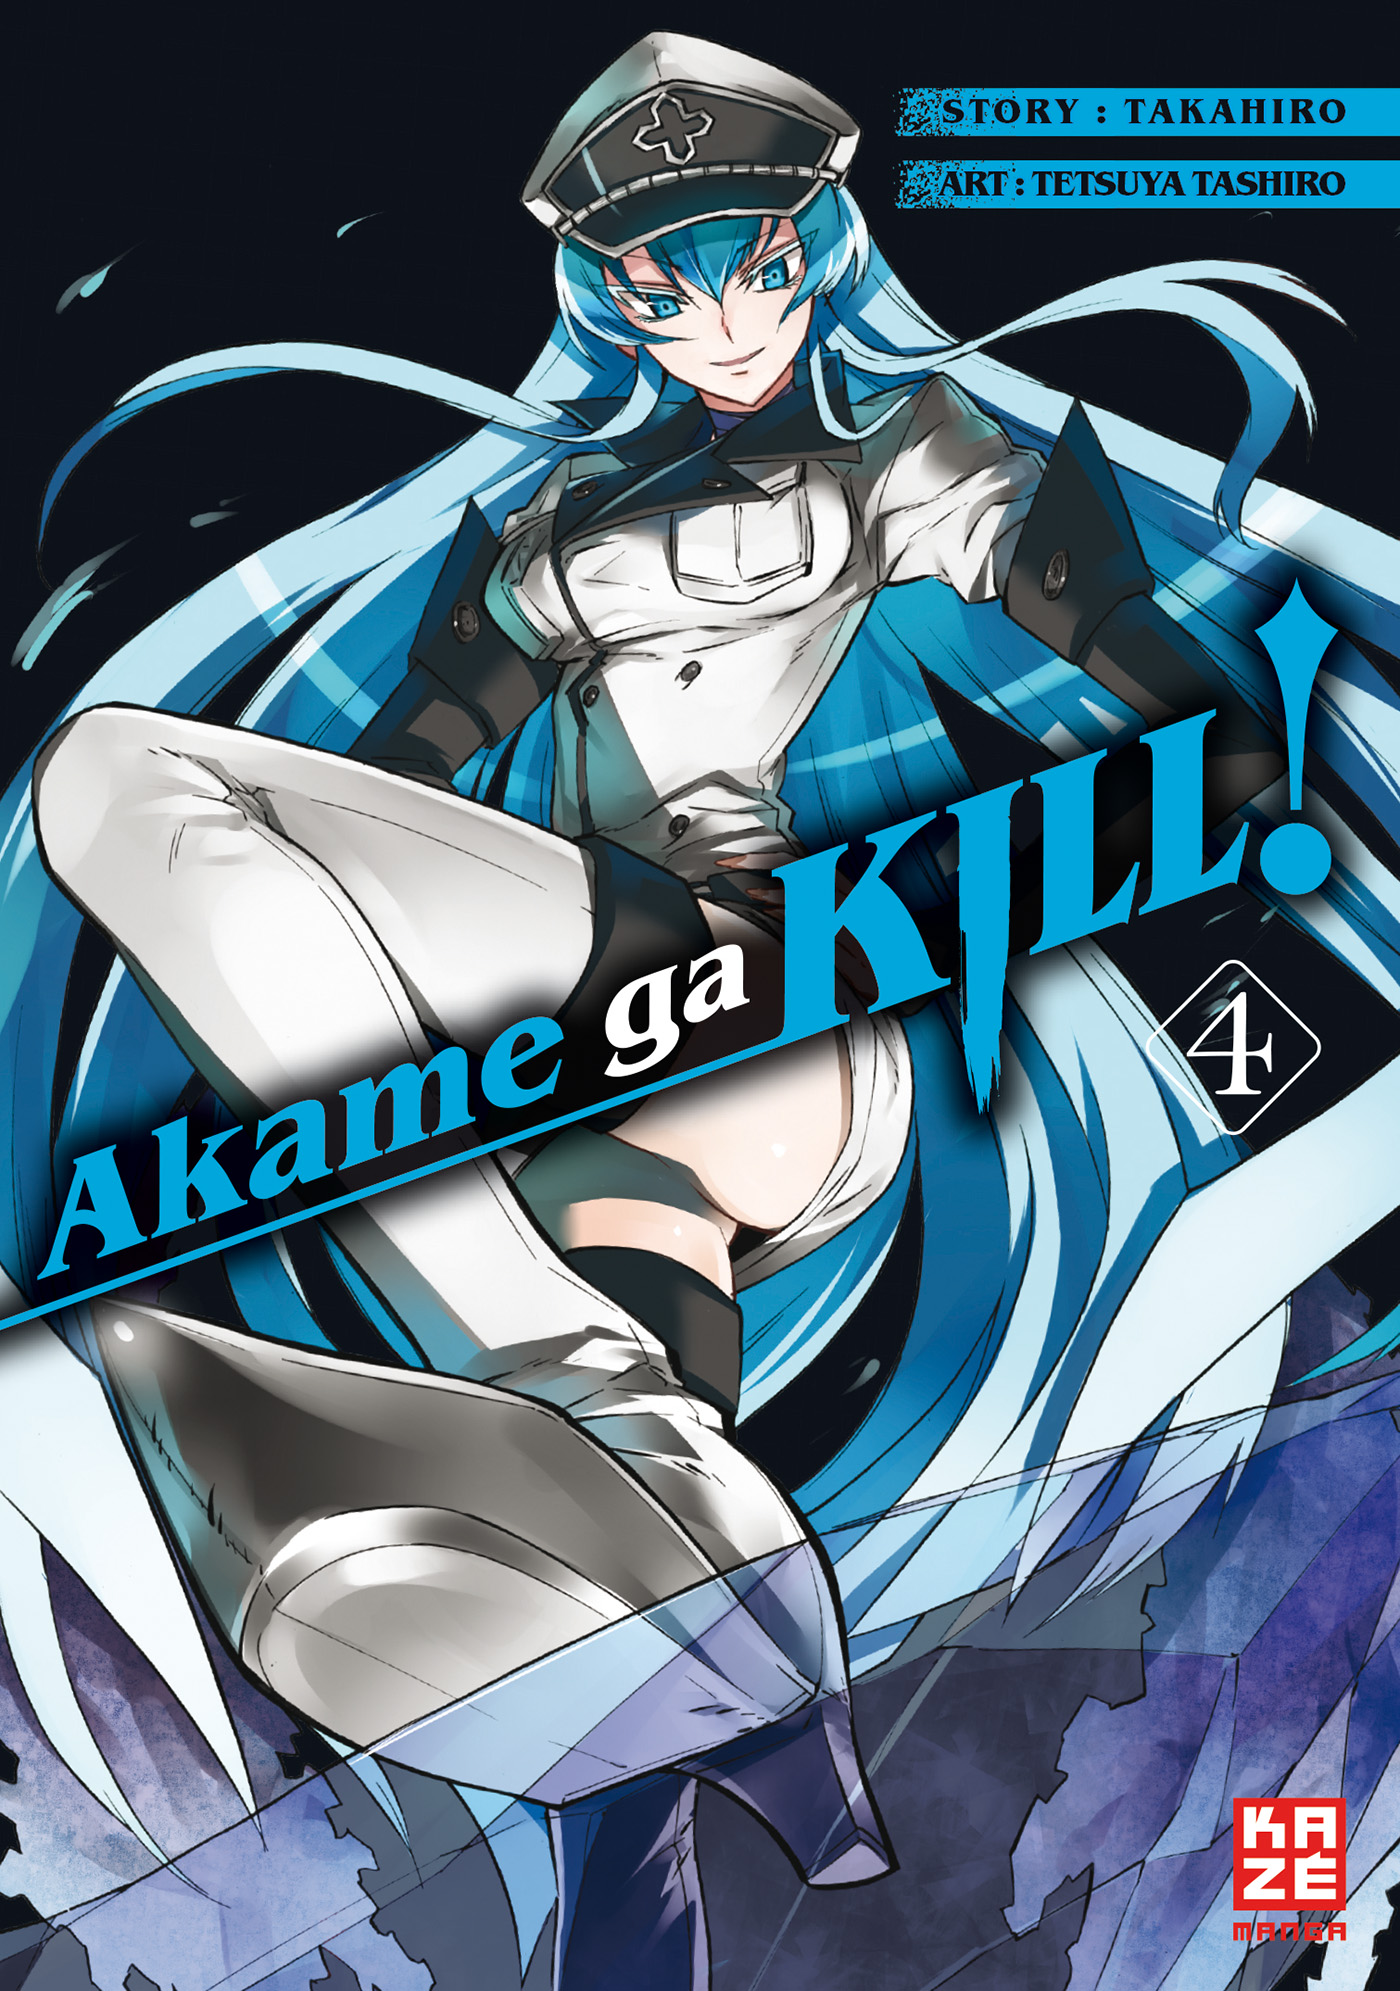 Ga Band Kill! 4 Akame -